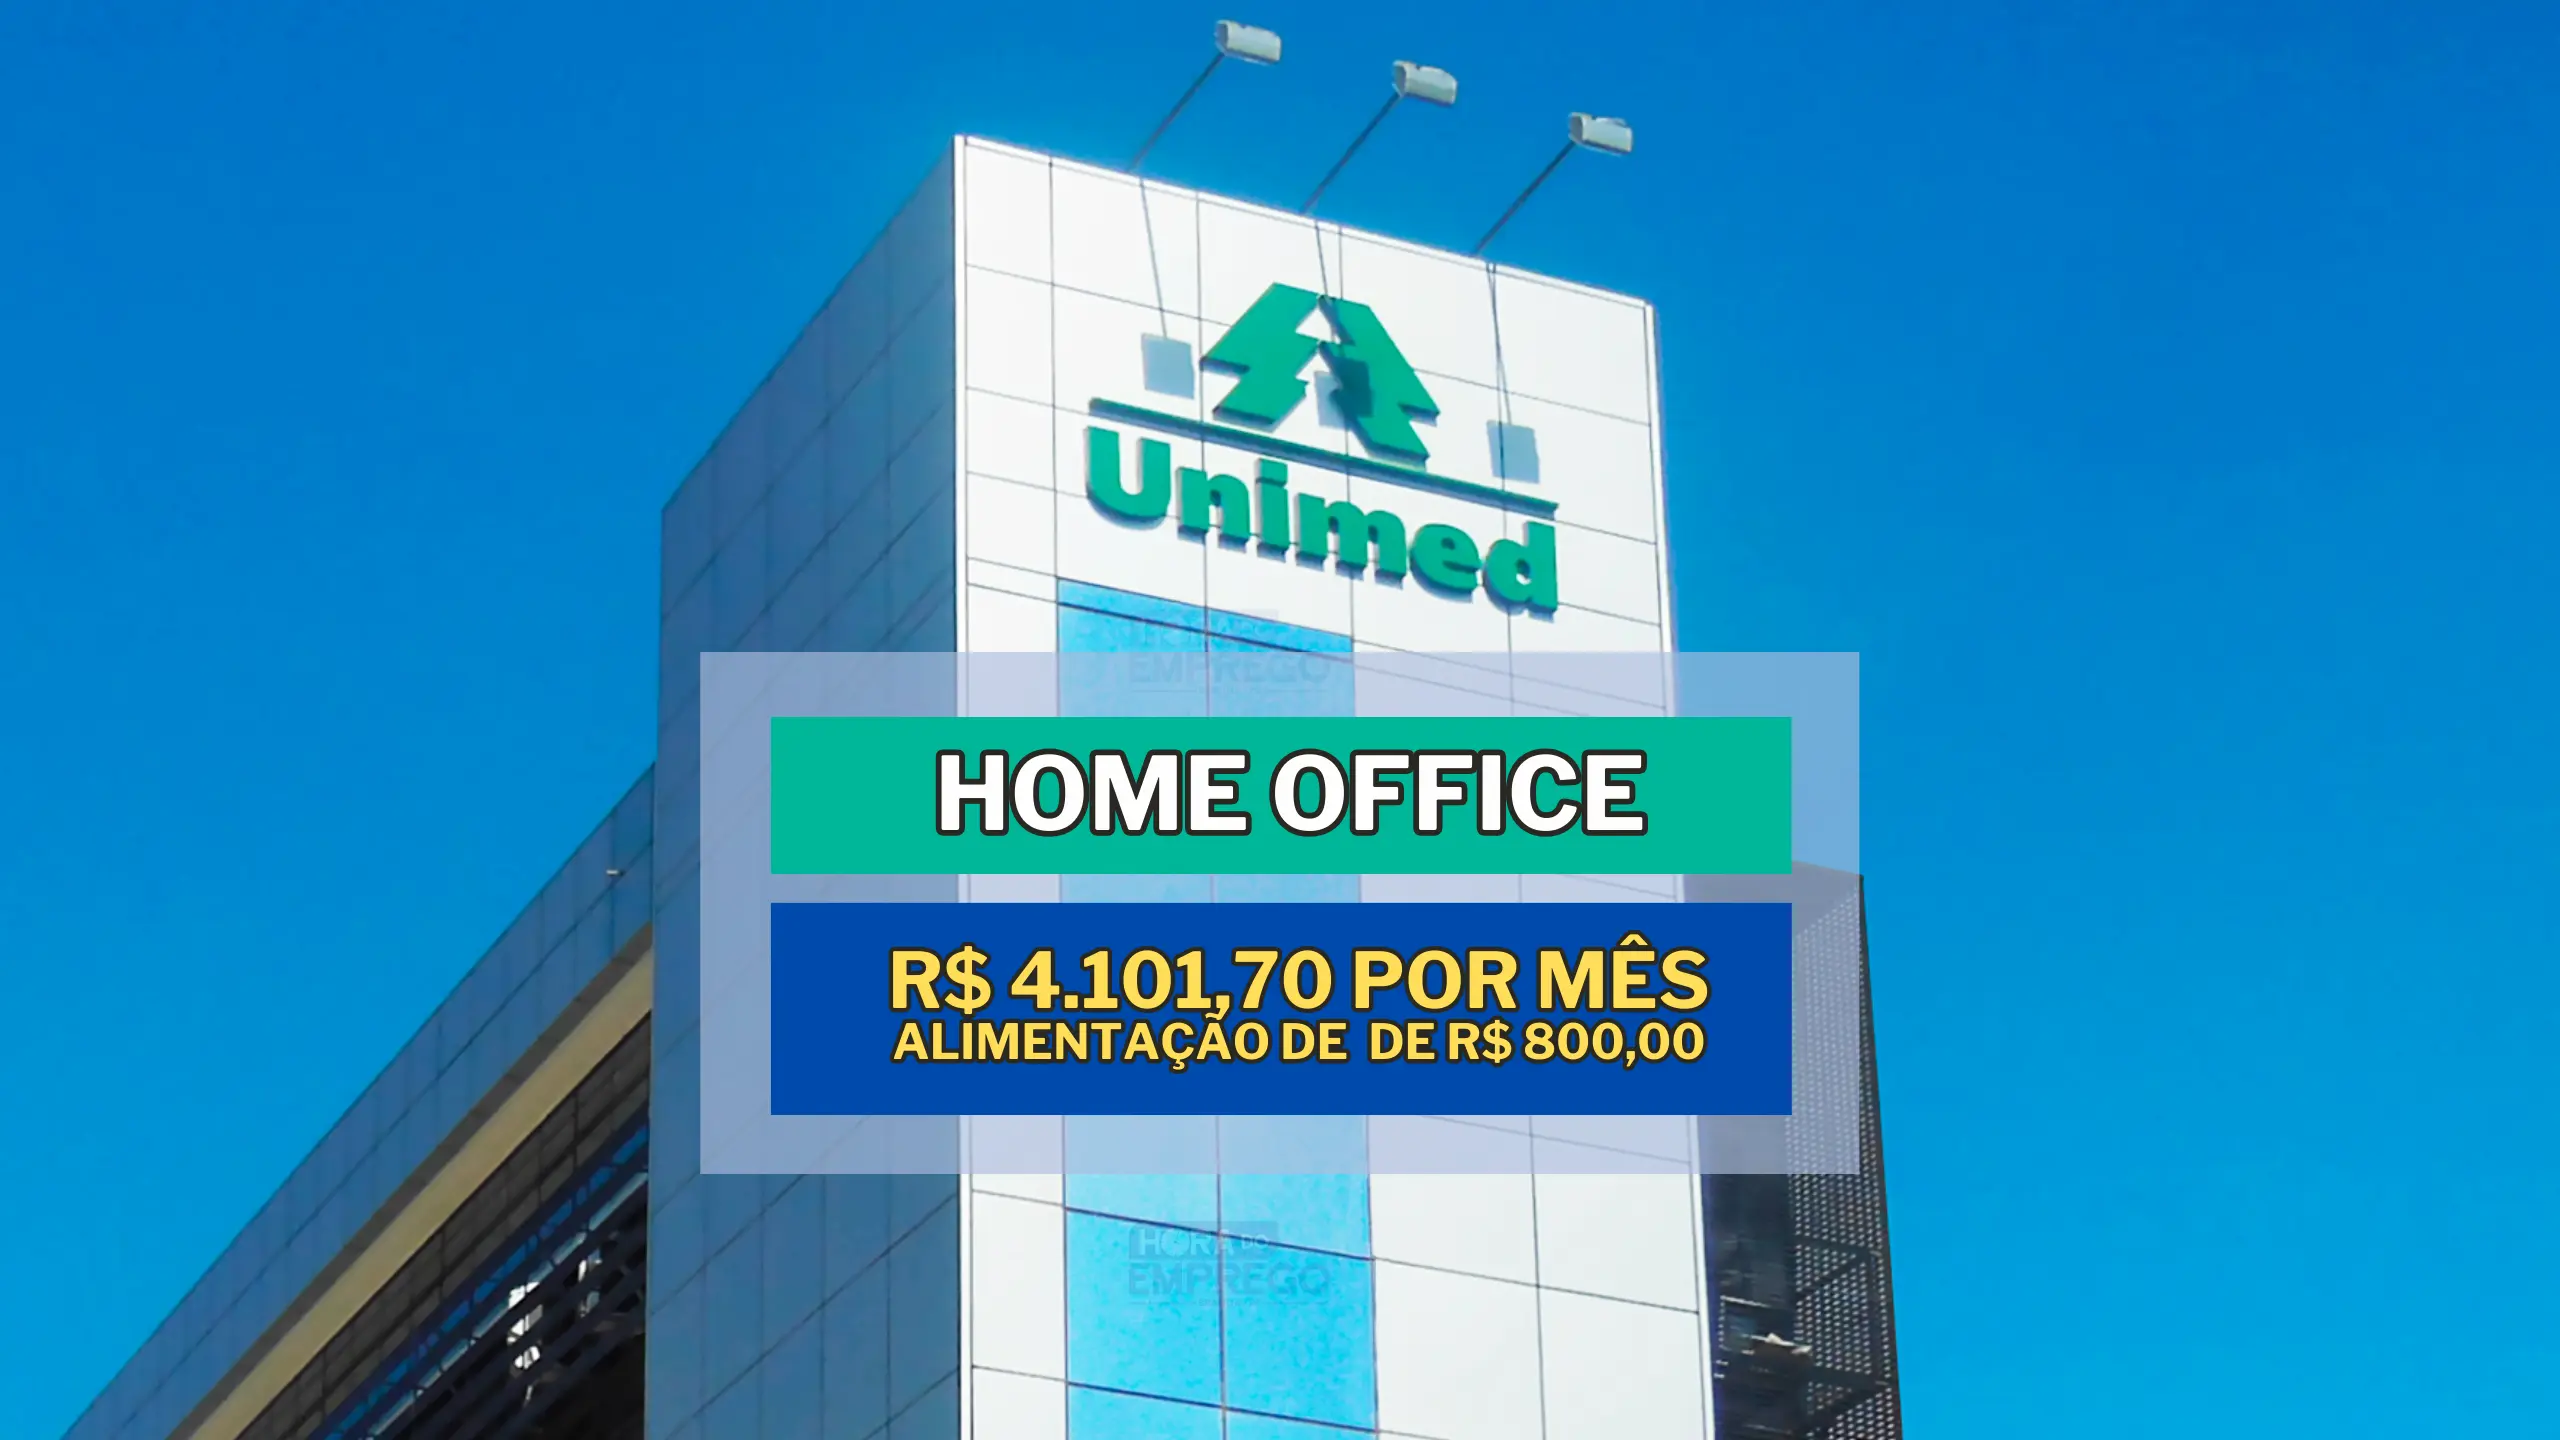 Unimed acaba de anunciar vagas HOME OFFICE com salário de R$ 4.101,70 mil e VA de R$ 800,00 para Analista de Compras e Contratos